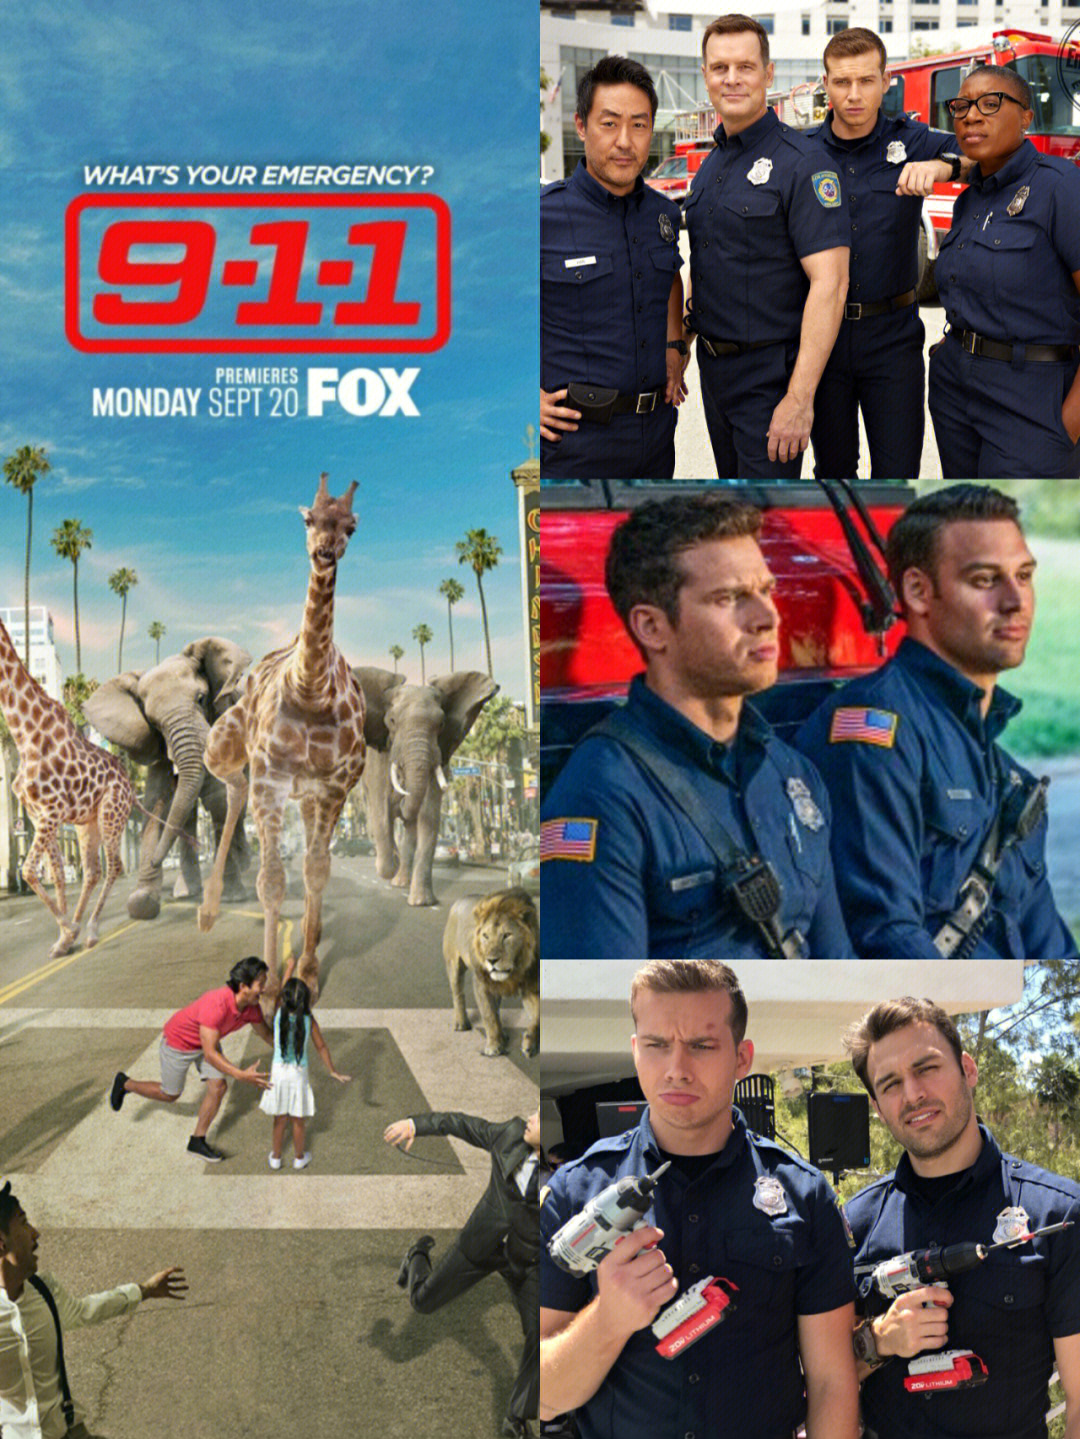 11566紧急呼救 (911)目前更新到了第五季,该剧主要是讲述救援人员